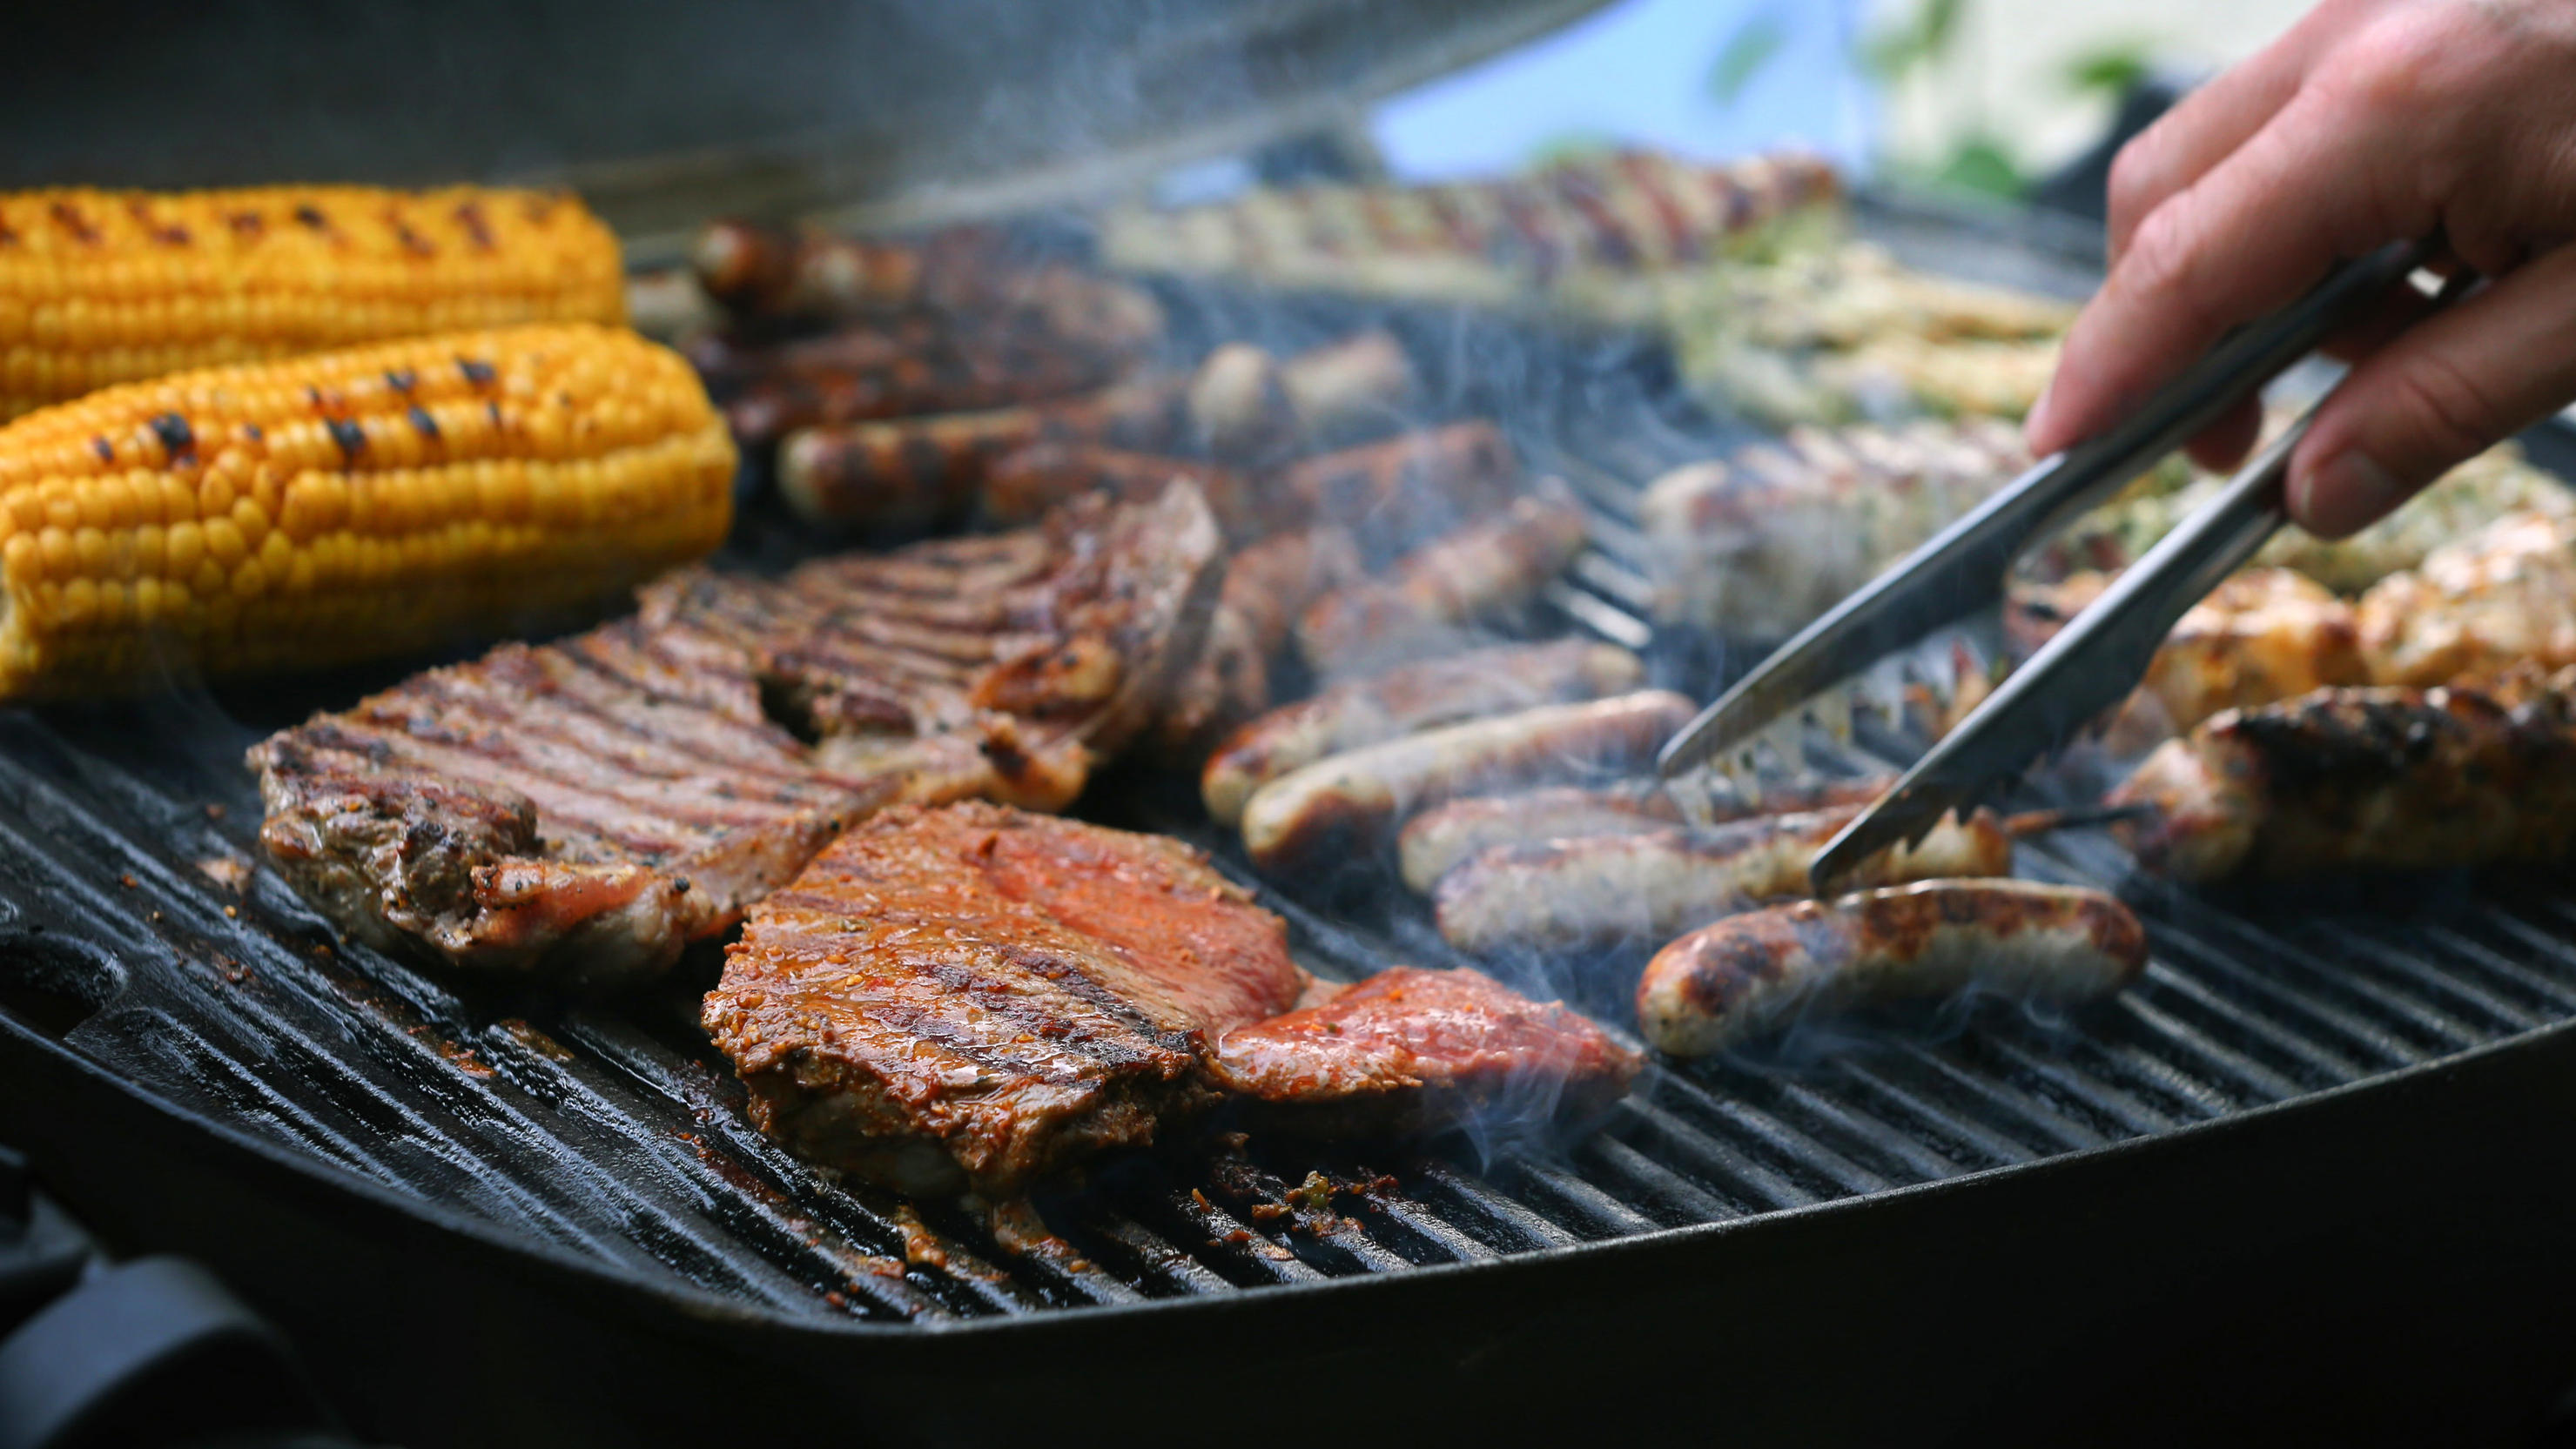 Maiskolben, Fleischspieße, Bratwürste und Steaks liegen auf dem Rost eines Gasgrills. 